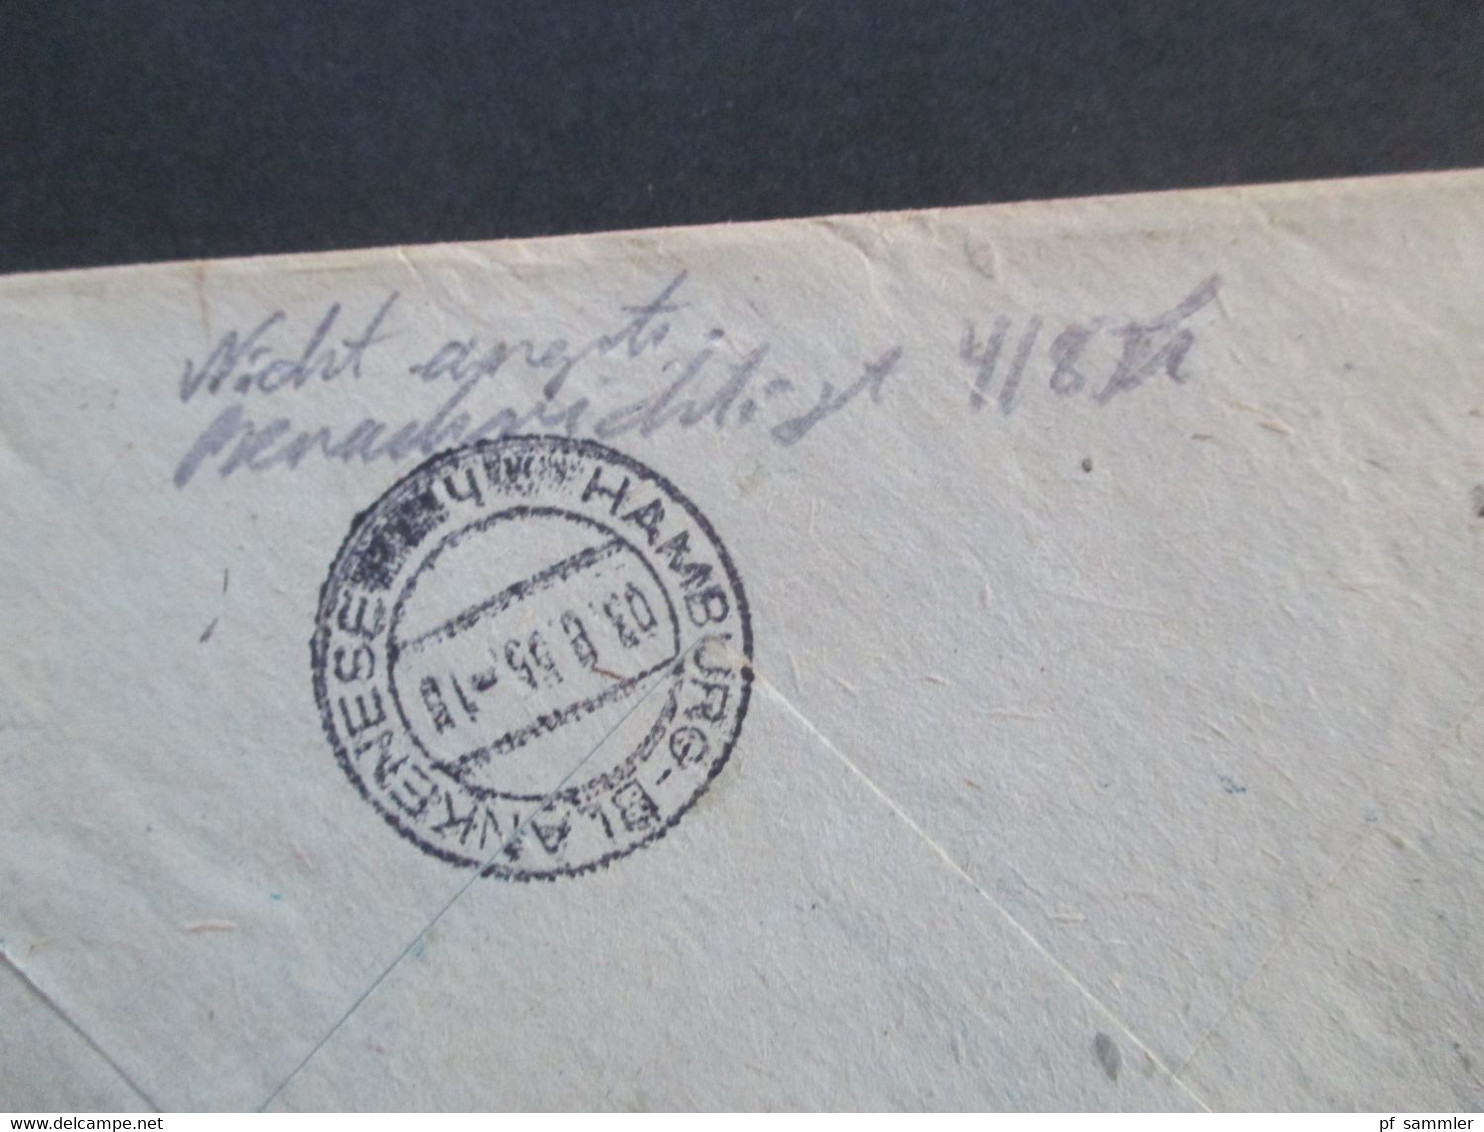 Rumänien 1955 Einschreiben Recomandat Galati Ganzsachen Umschlag Mit 2 Zusatzfrankaturen Vermerk: Nicht Angtr. - Covers & Documents